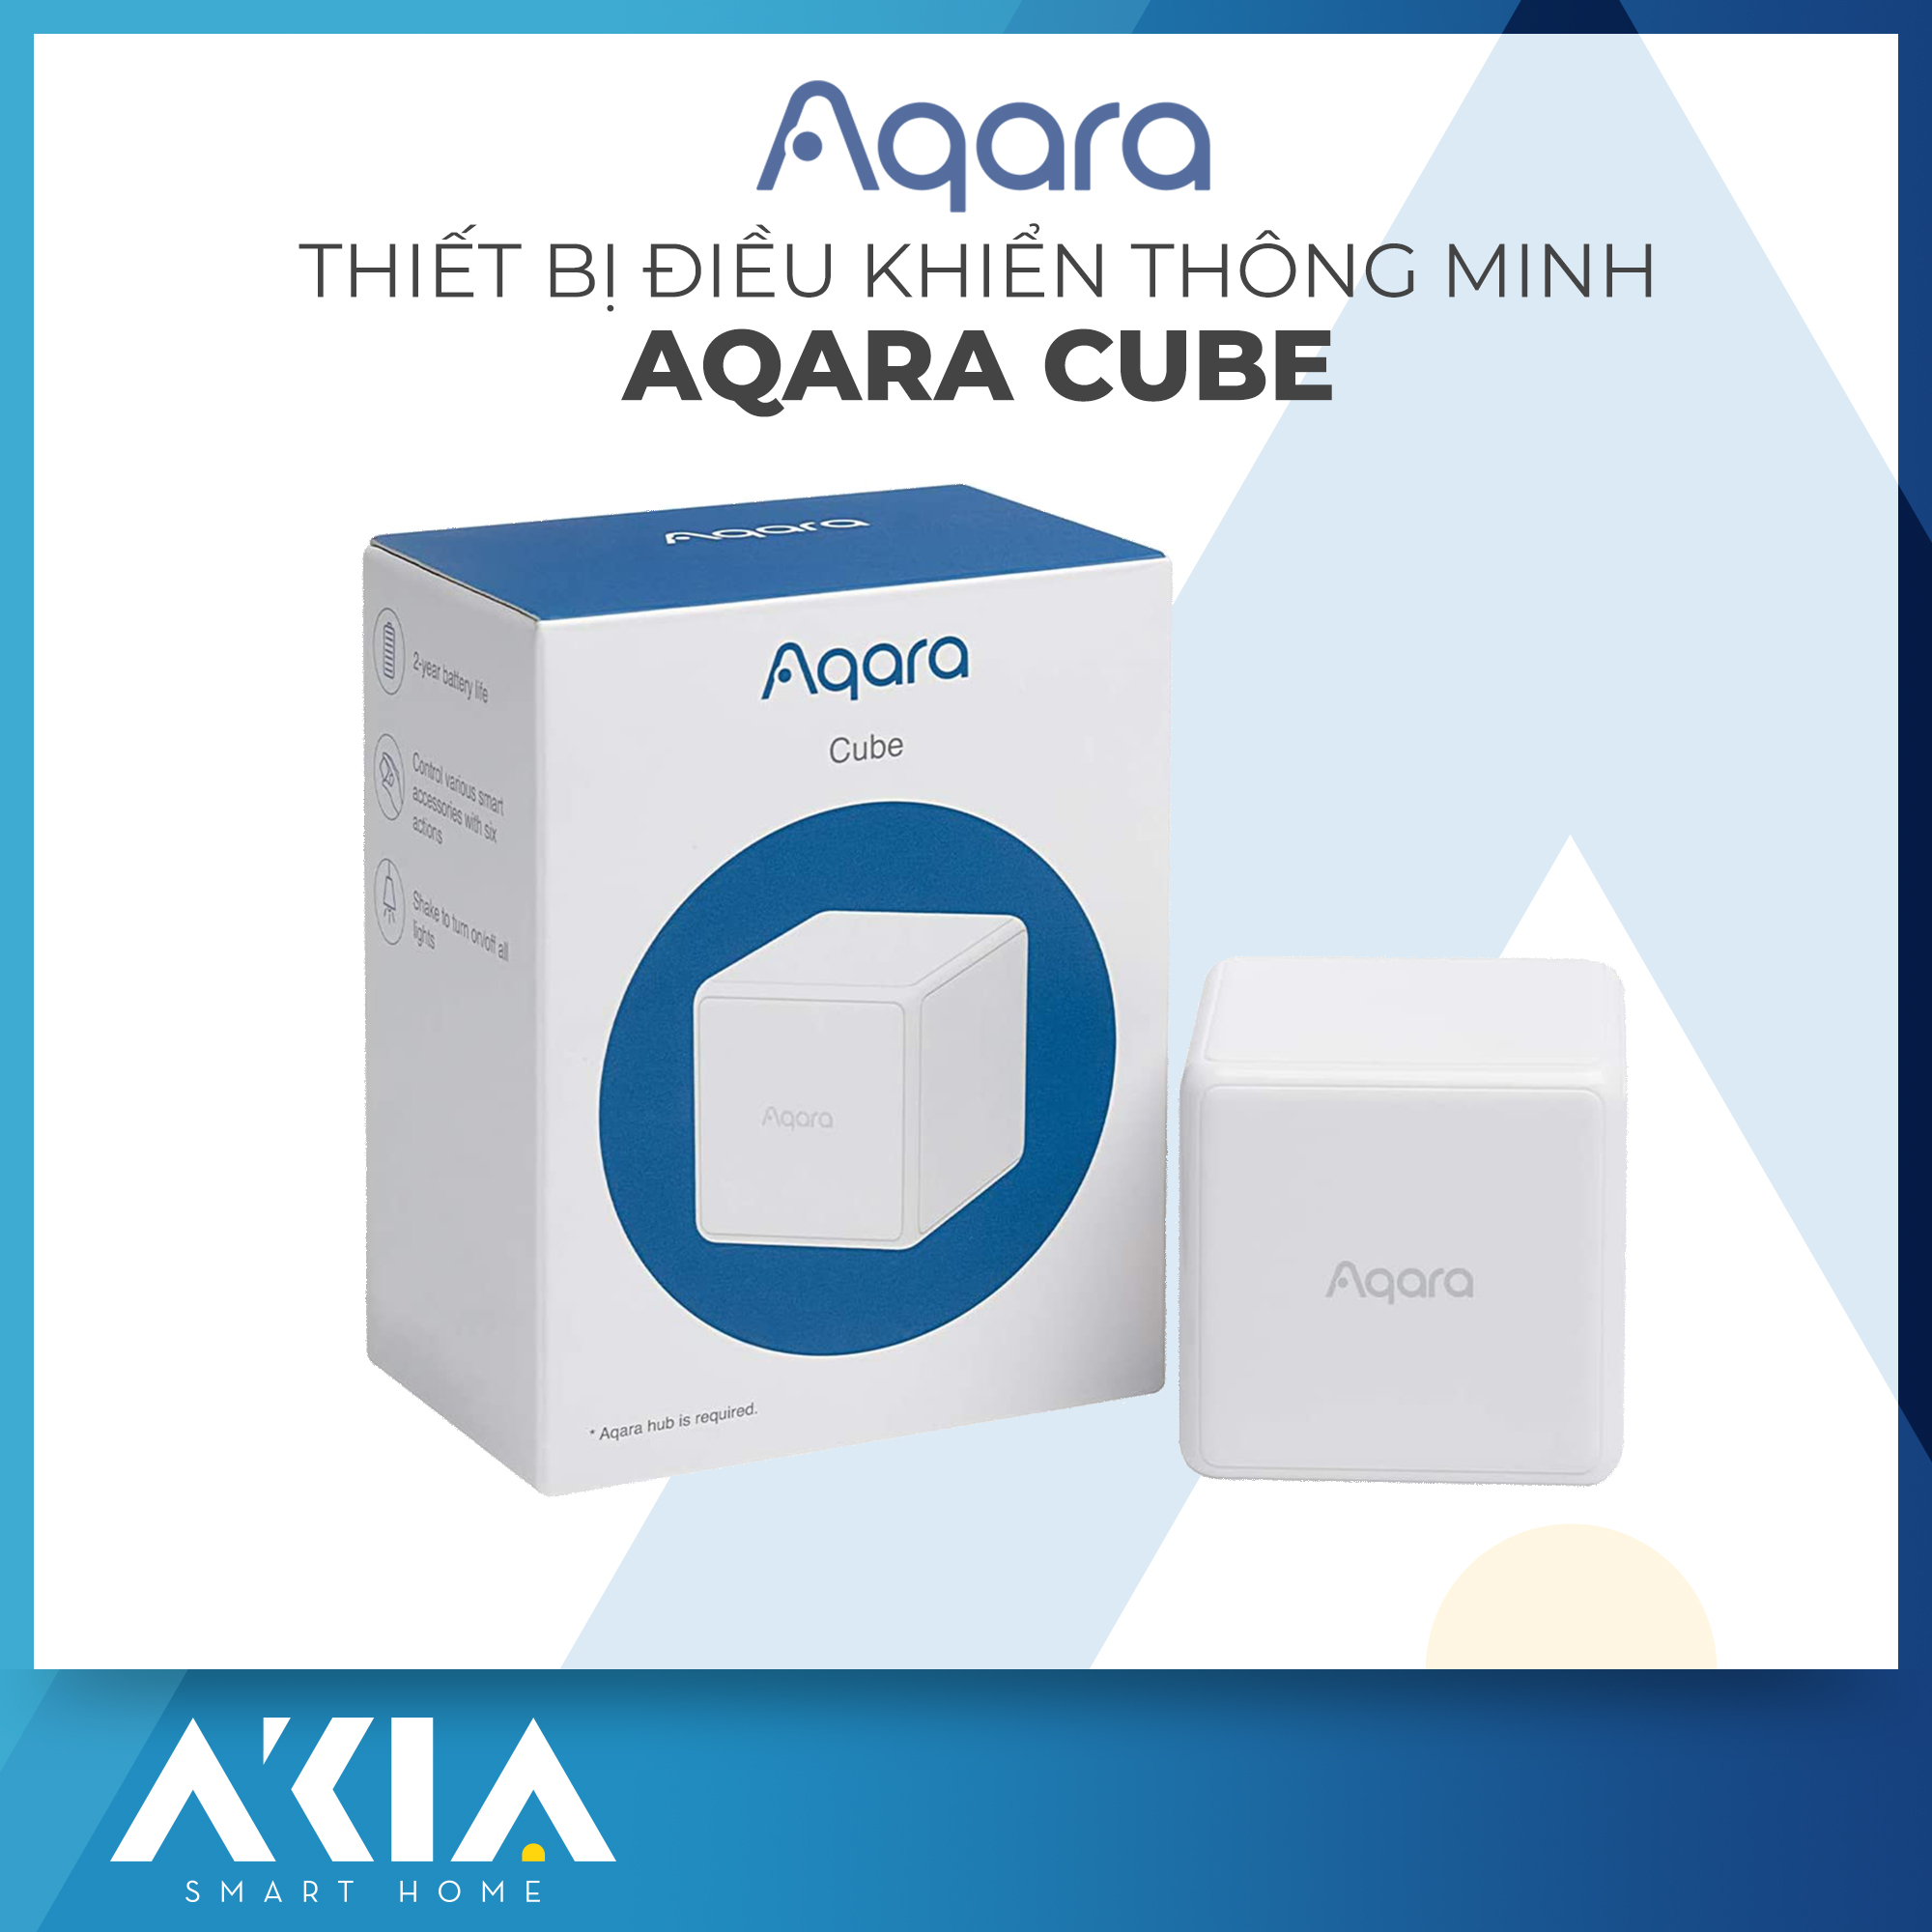 Aqara Cube Thiết bị điều khiển từ xa hình khối MFKZQ01LM - 6 cảm biến